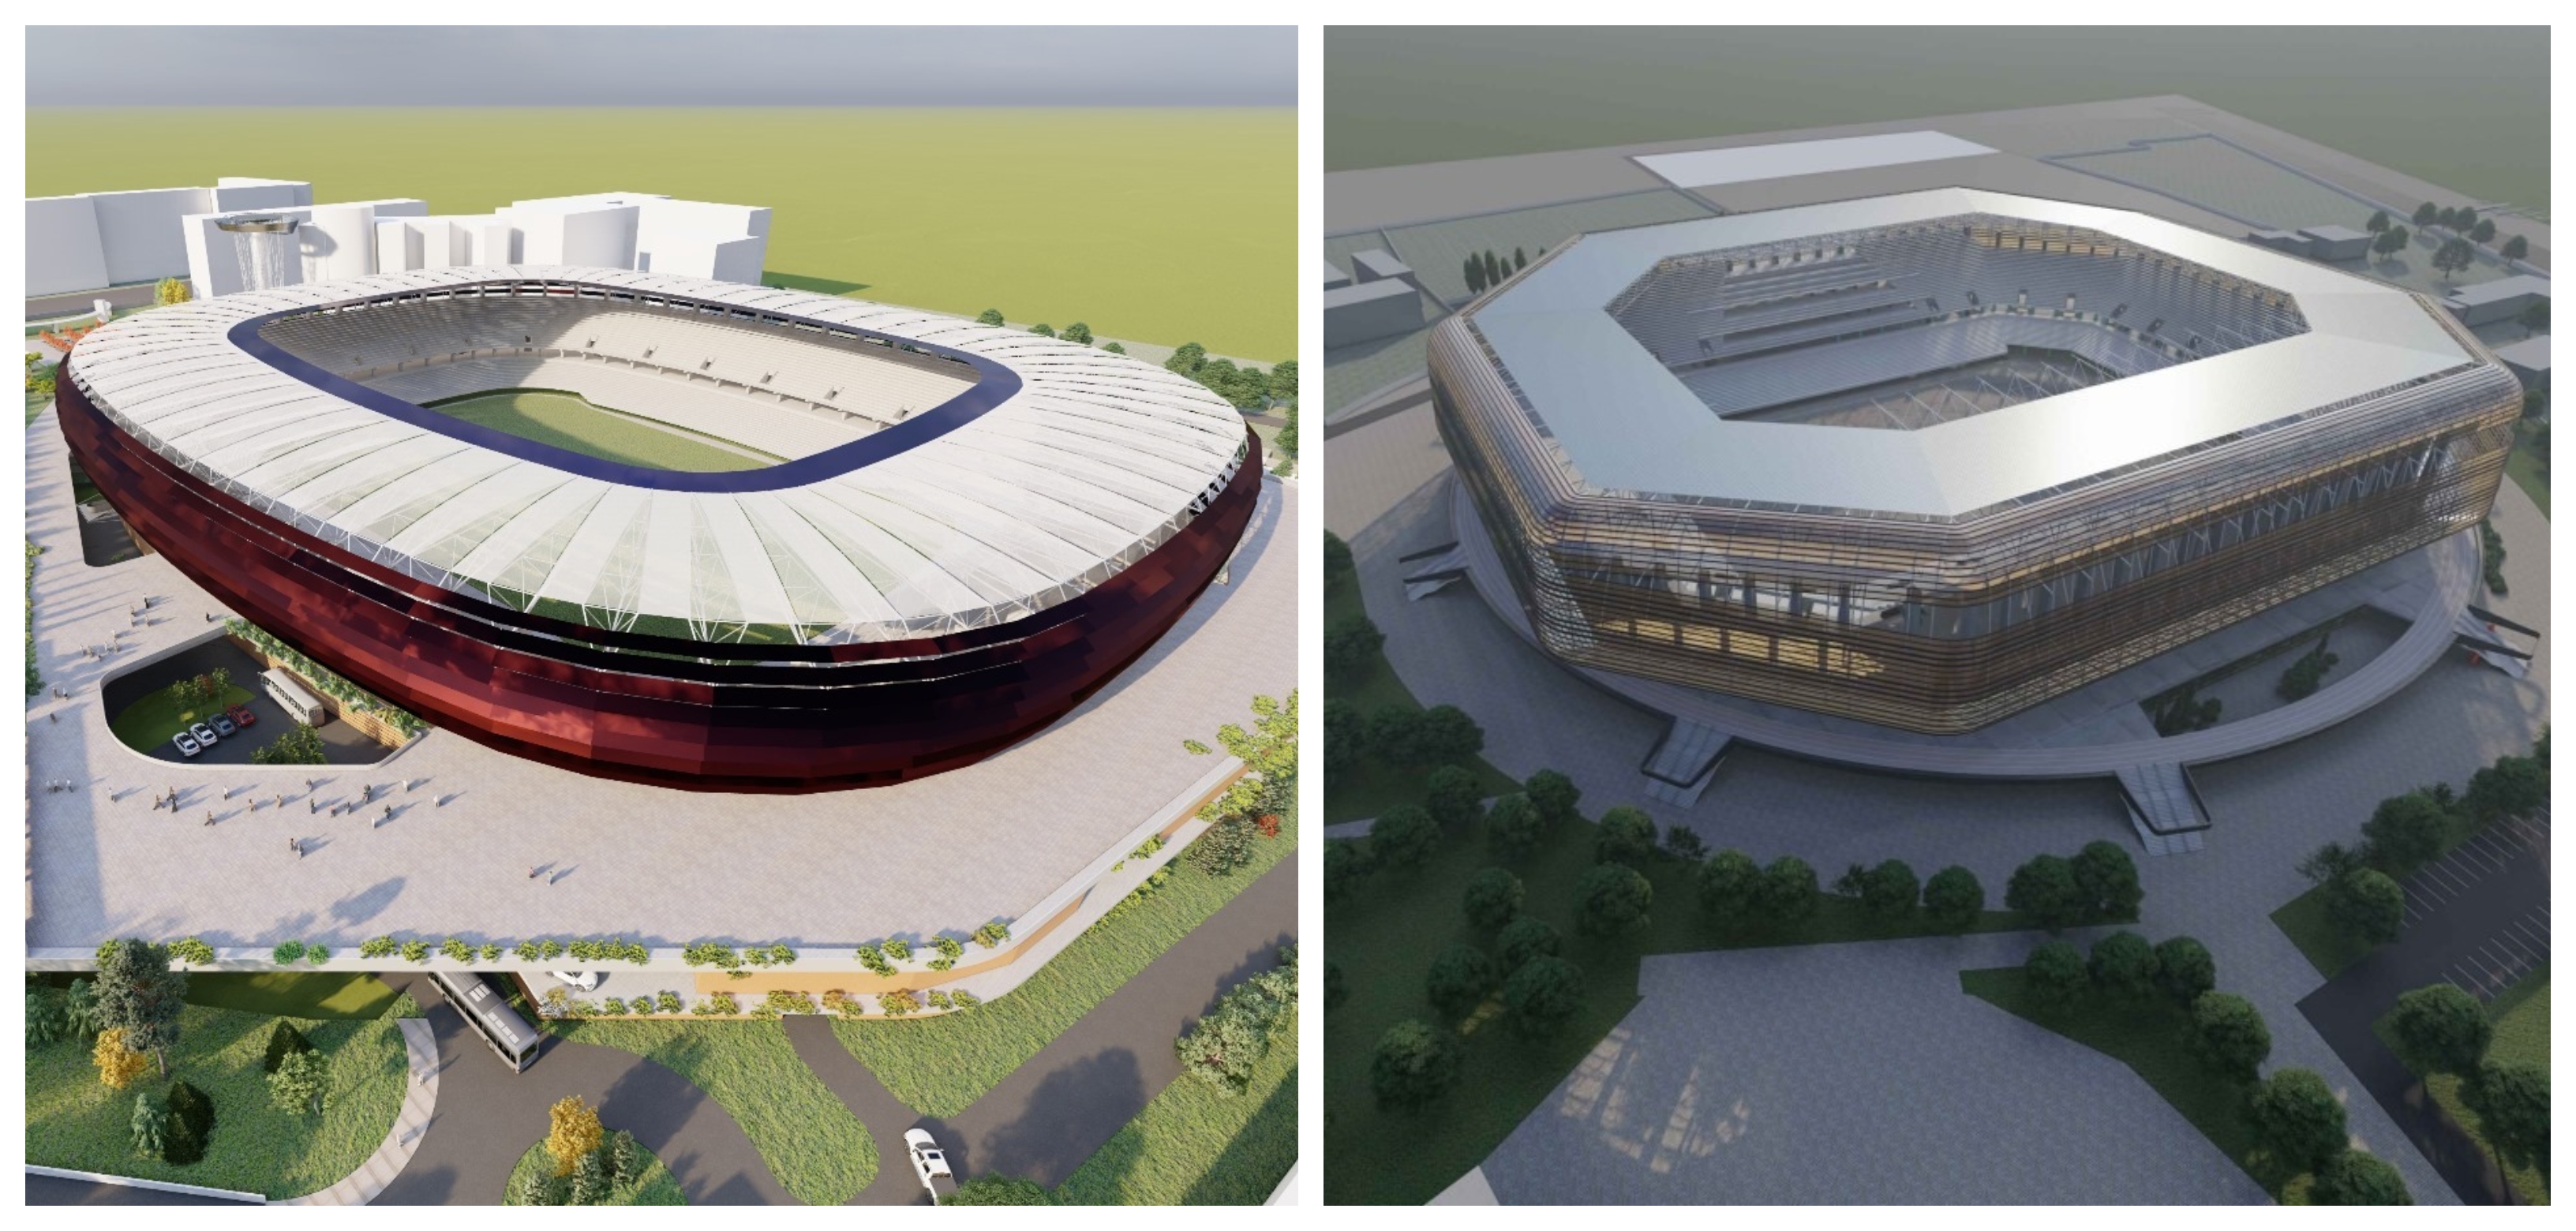 Ministerul Dezvoltării a anunțat cât vor costa stadionul Dinamo și cel din Timișoara. Care e mai mare și care e mai scump